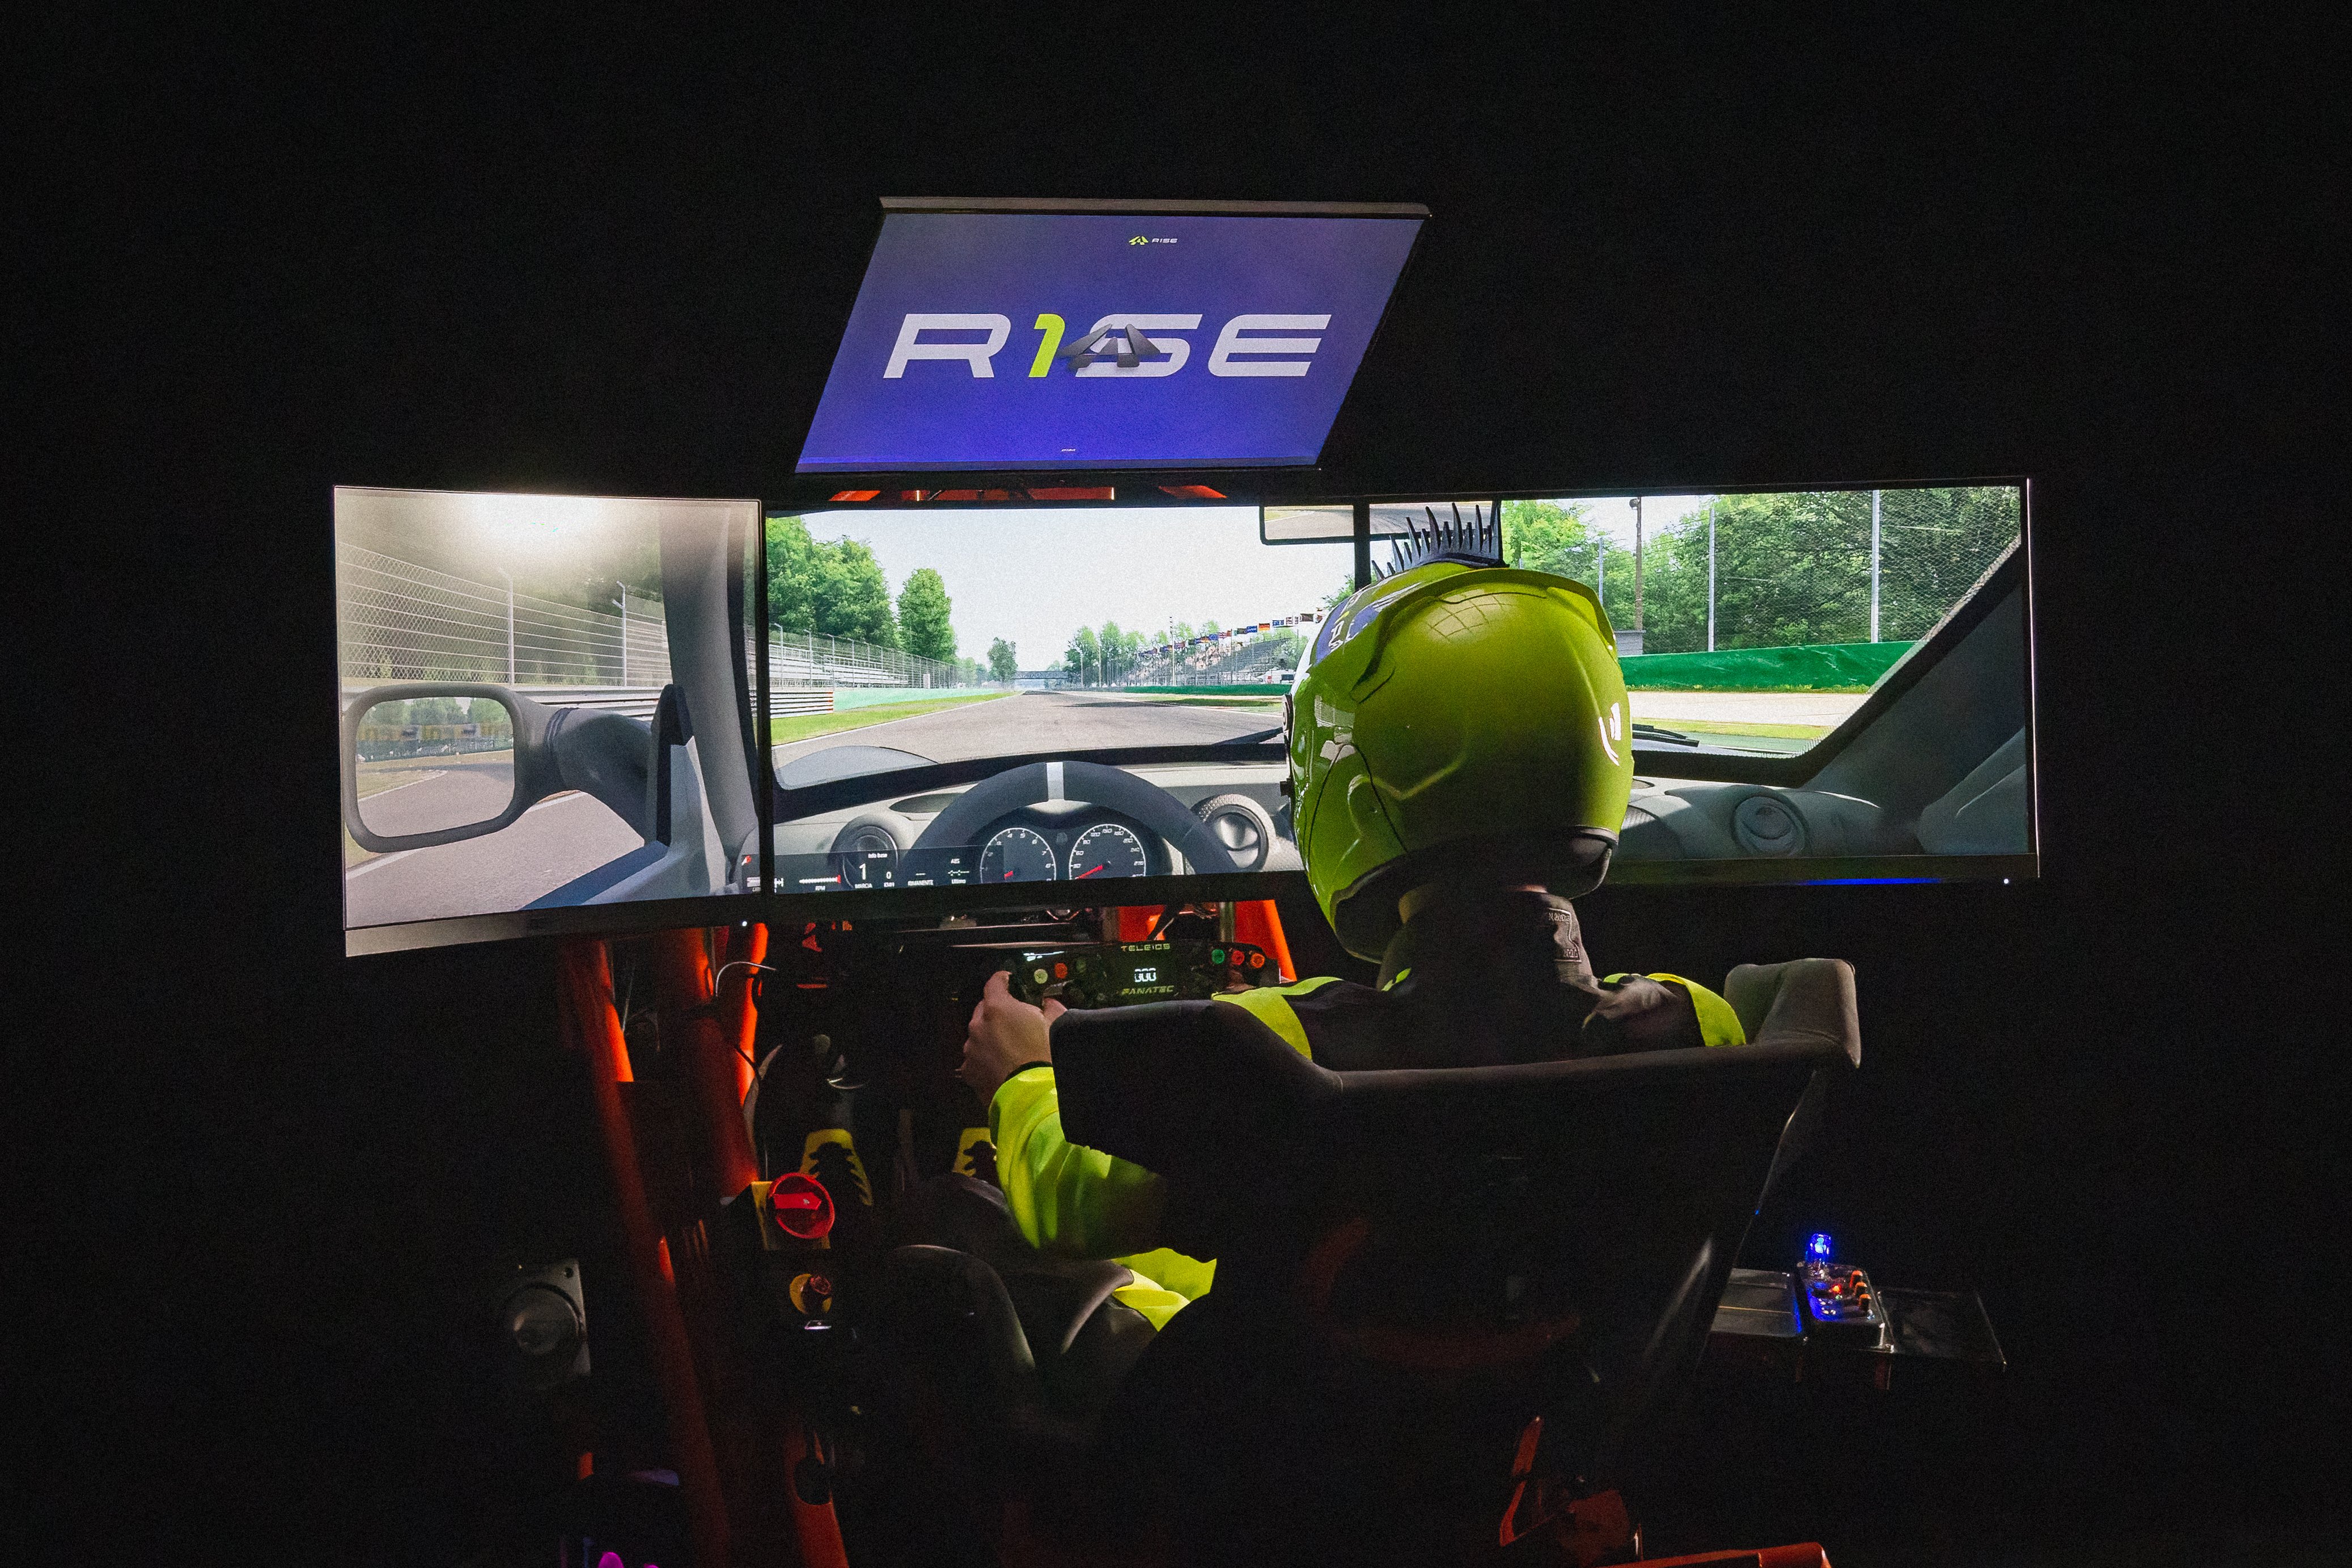 More information about "Annunciato il progetto R1SE "futuro del motorsport", basato su Assetto Corsa"